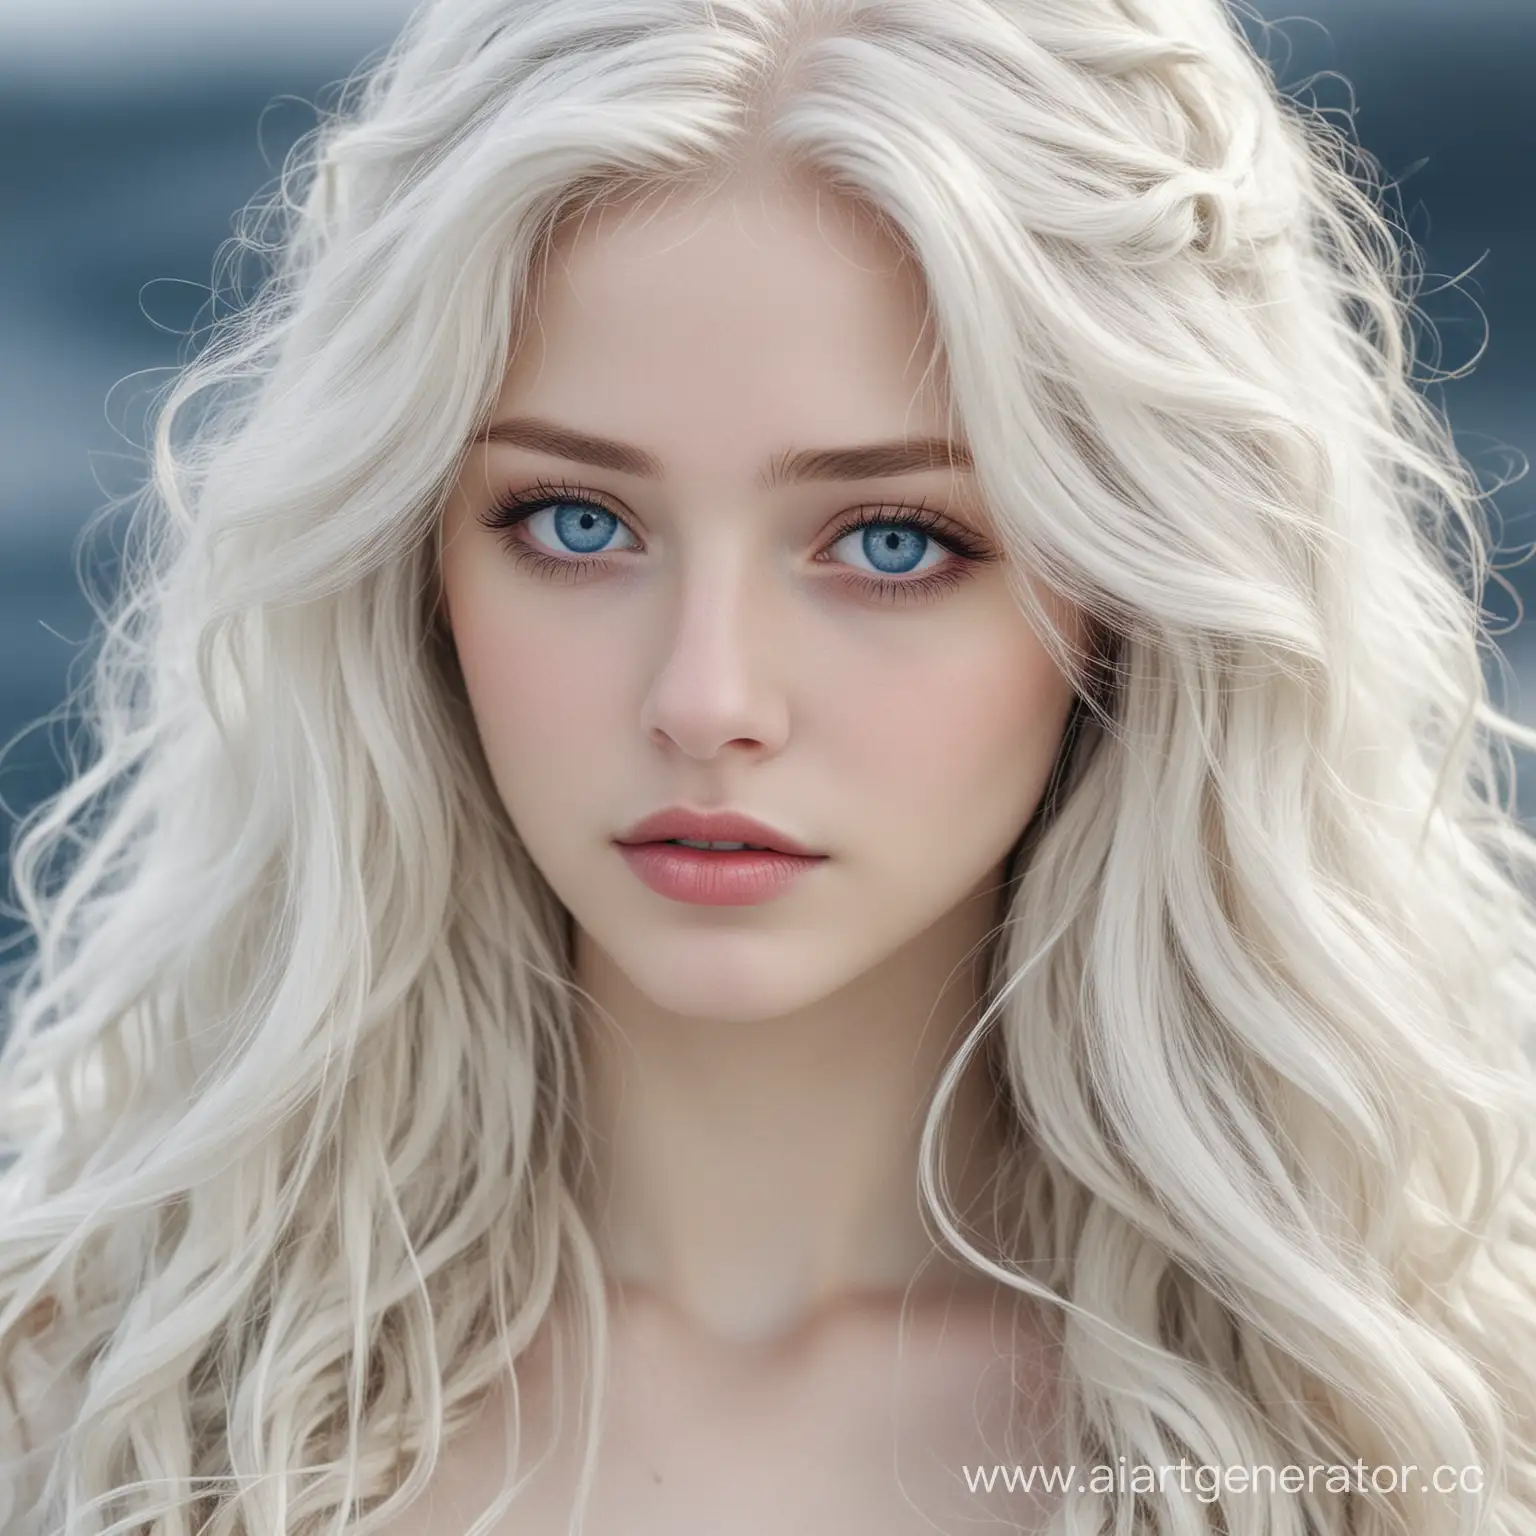 девушка, принцесса, длинные волнистые белые волосы, голубые глаза, бледная кожа, холод, север, строгость